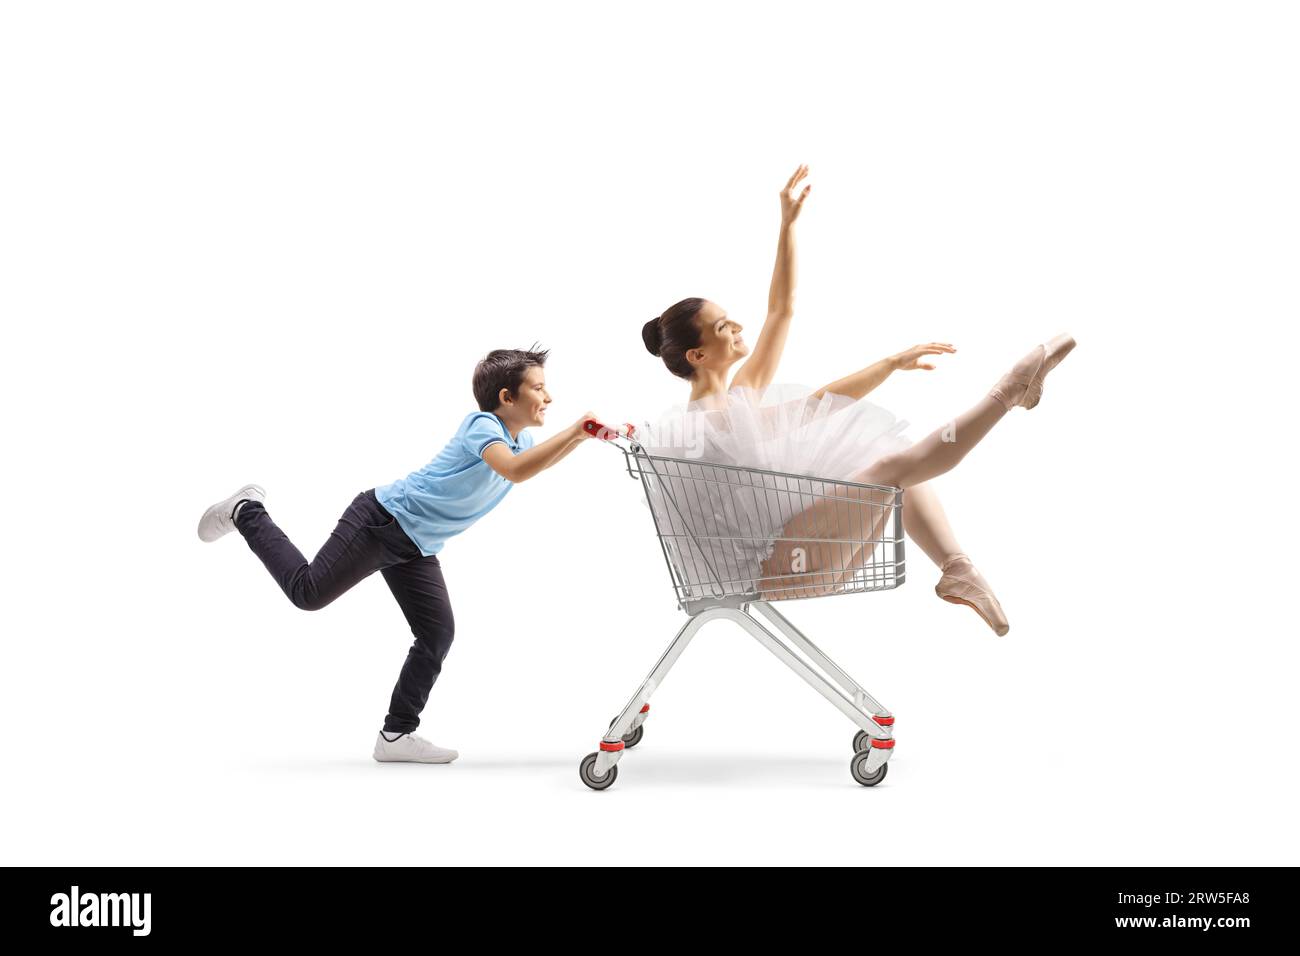 Junge, der eine Ballerina in einen Einkaufswagen schiebt, isoliert auf weißem Hintergrund Stockfoto